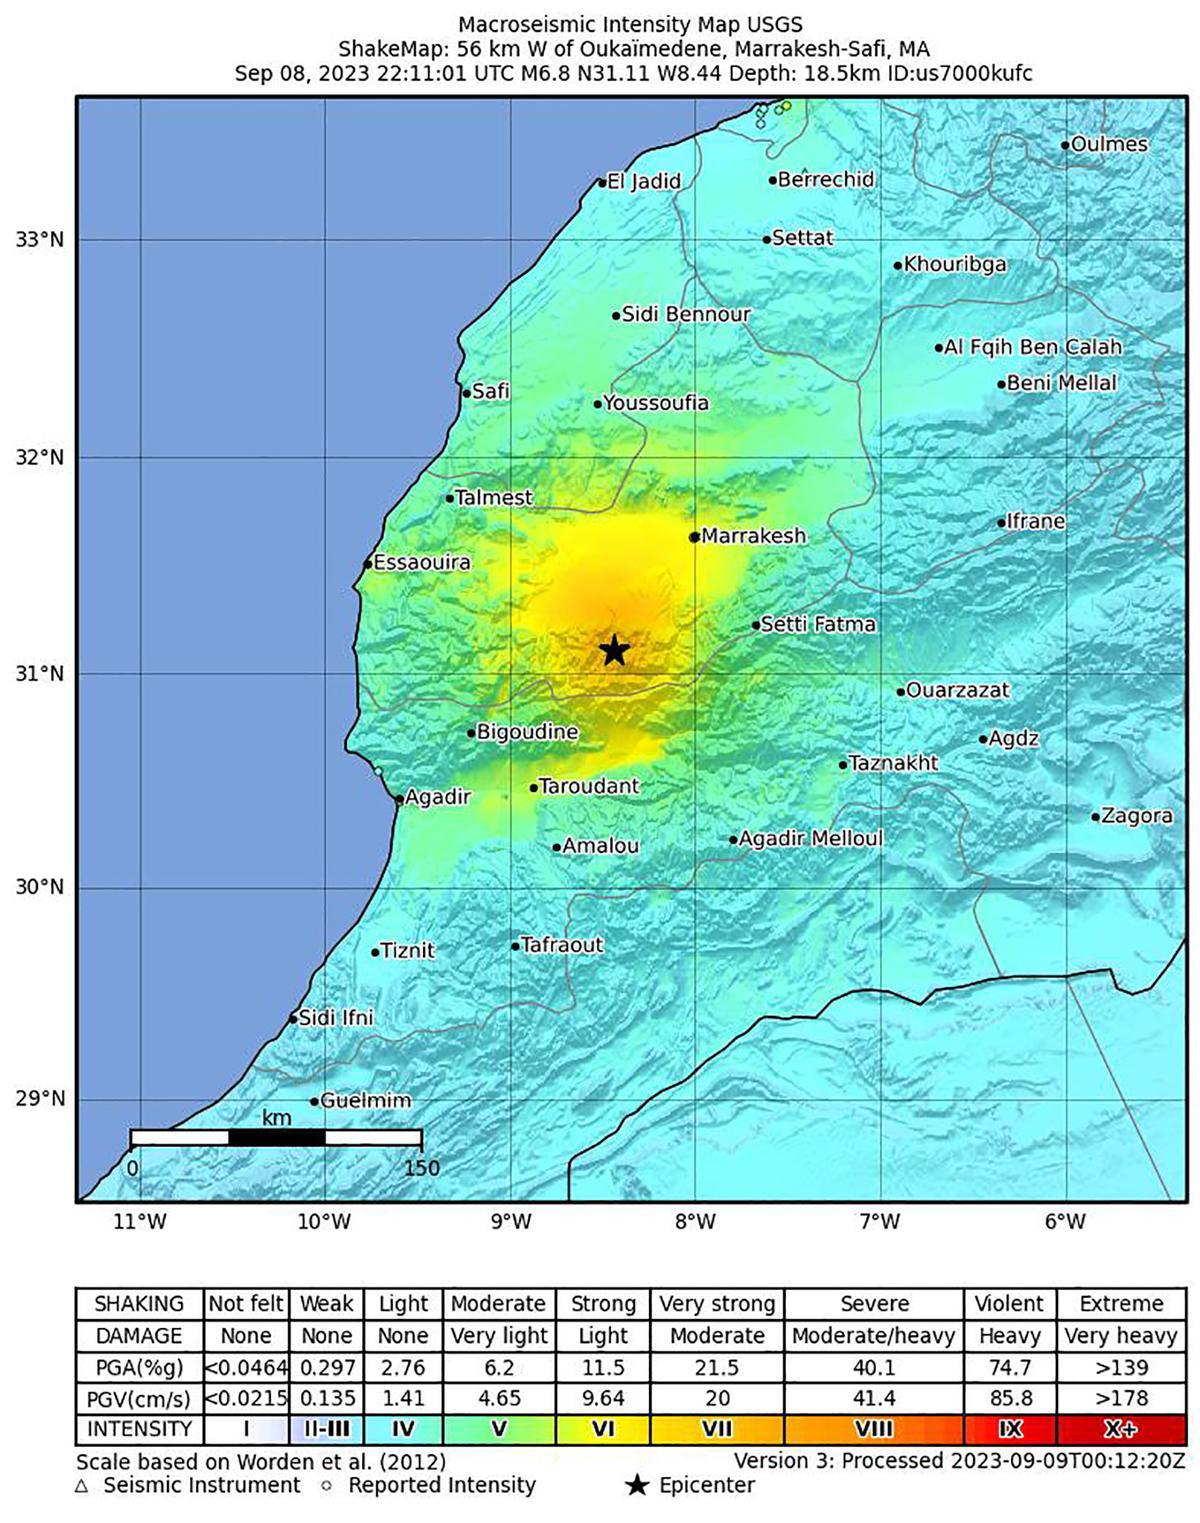 Al menos 632 muertos y 329 heridos por un terremoto en Marruecos